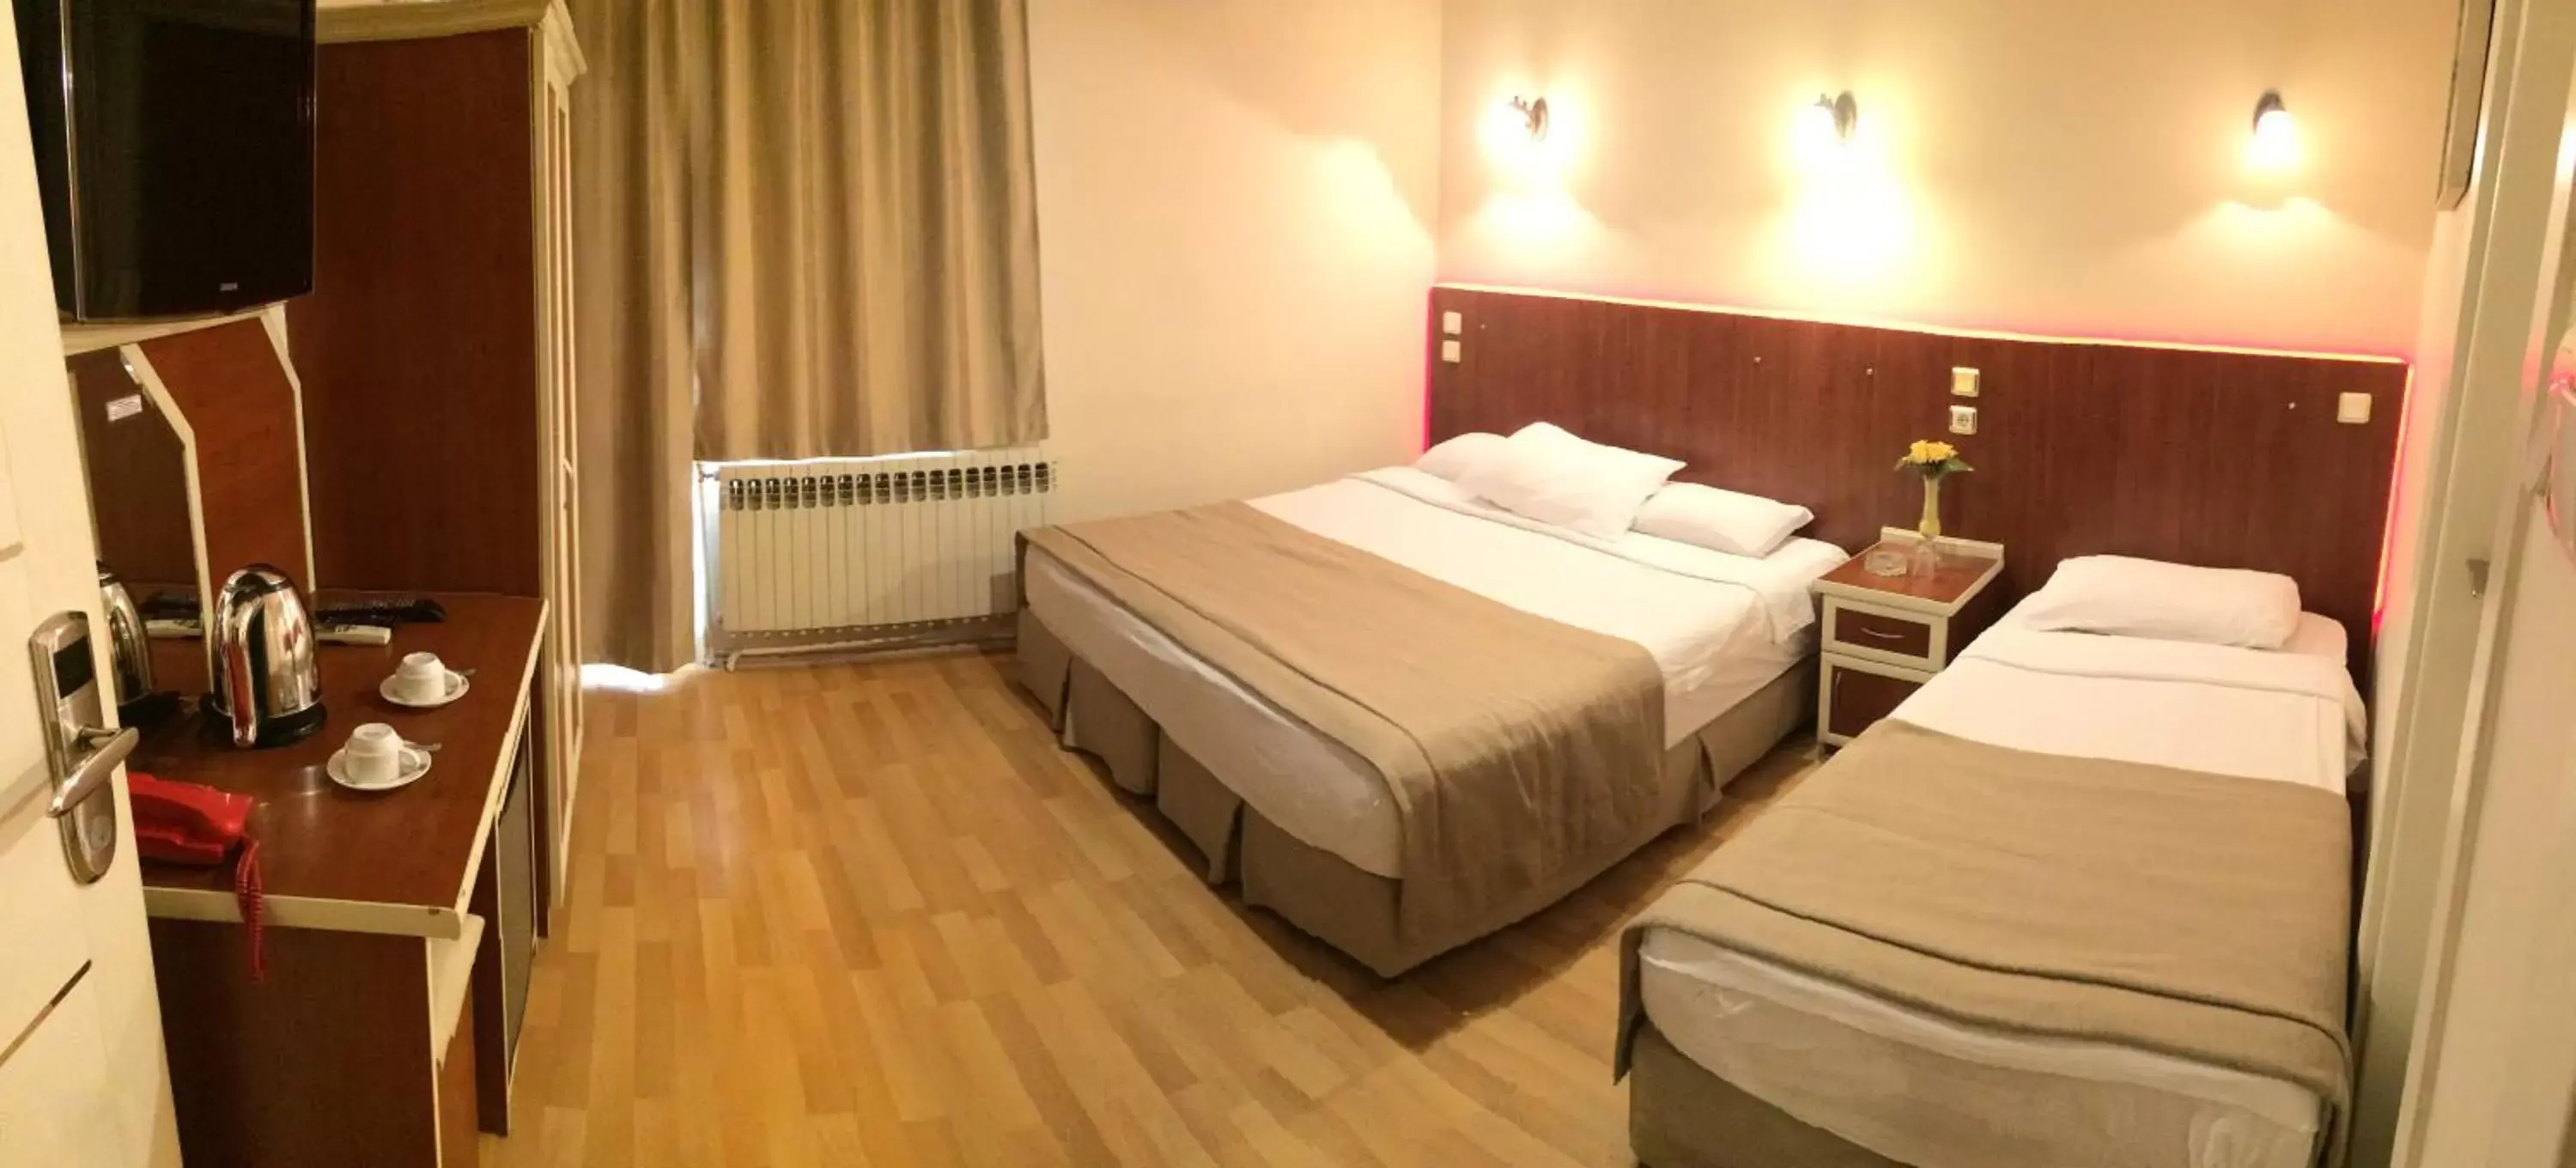 Bed in Ayvazali Hotel